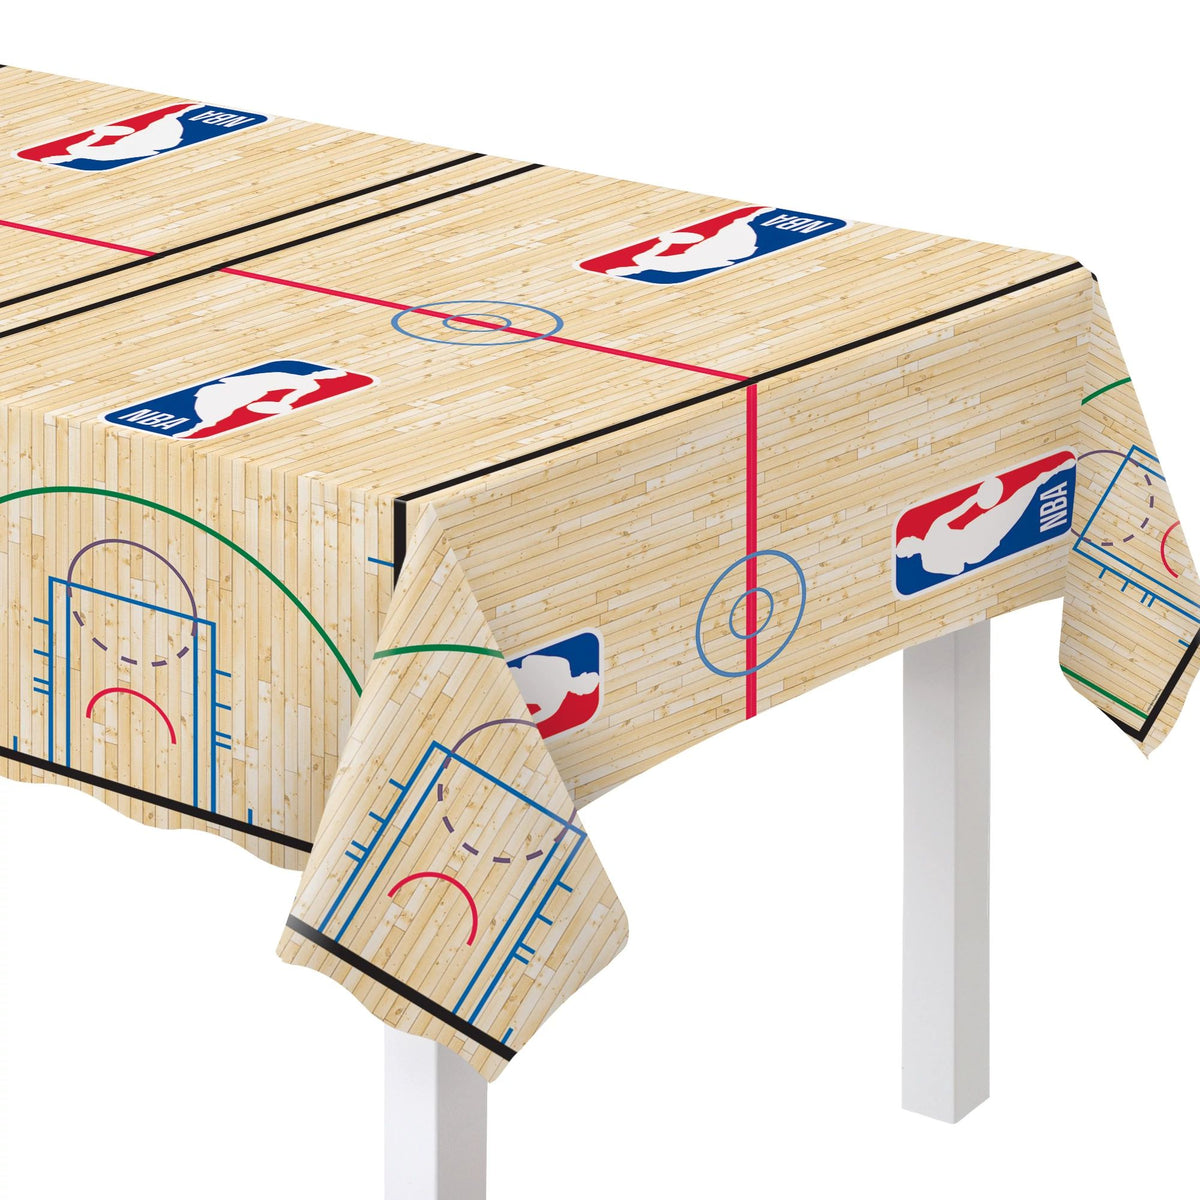 Wilson NBA Basketball All Over Print Table Cover